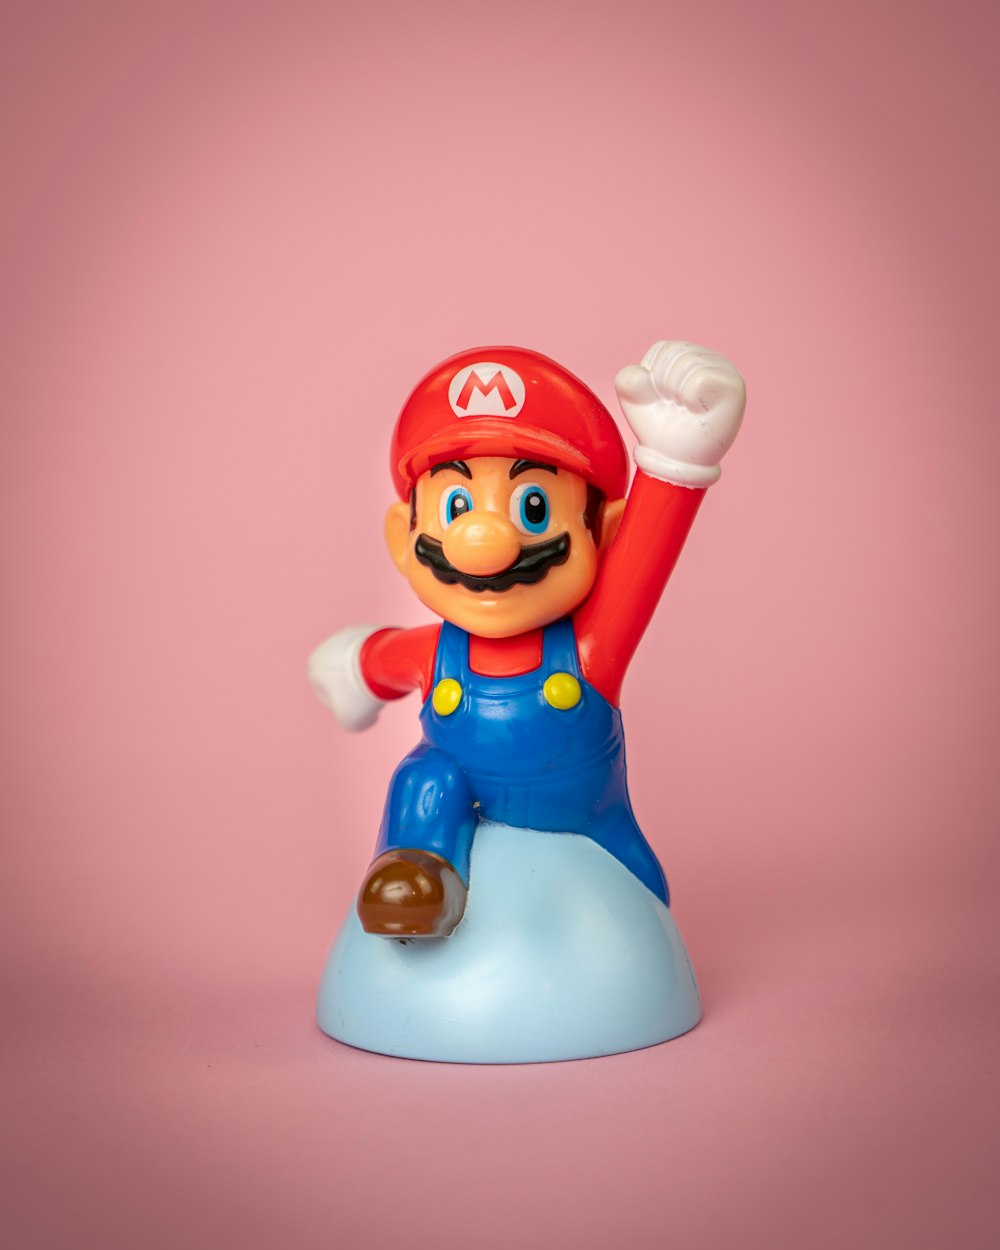 Une figurine jouet de Mario sur un objet bleu